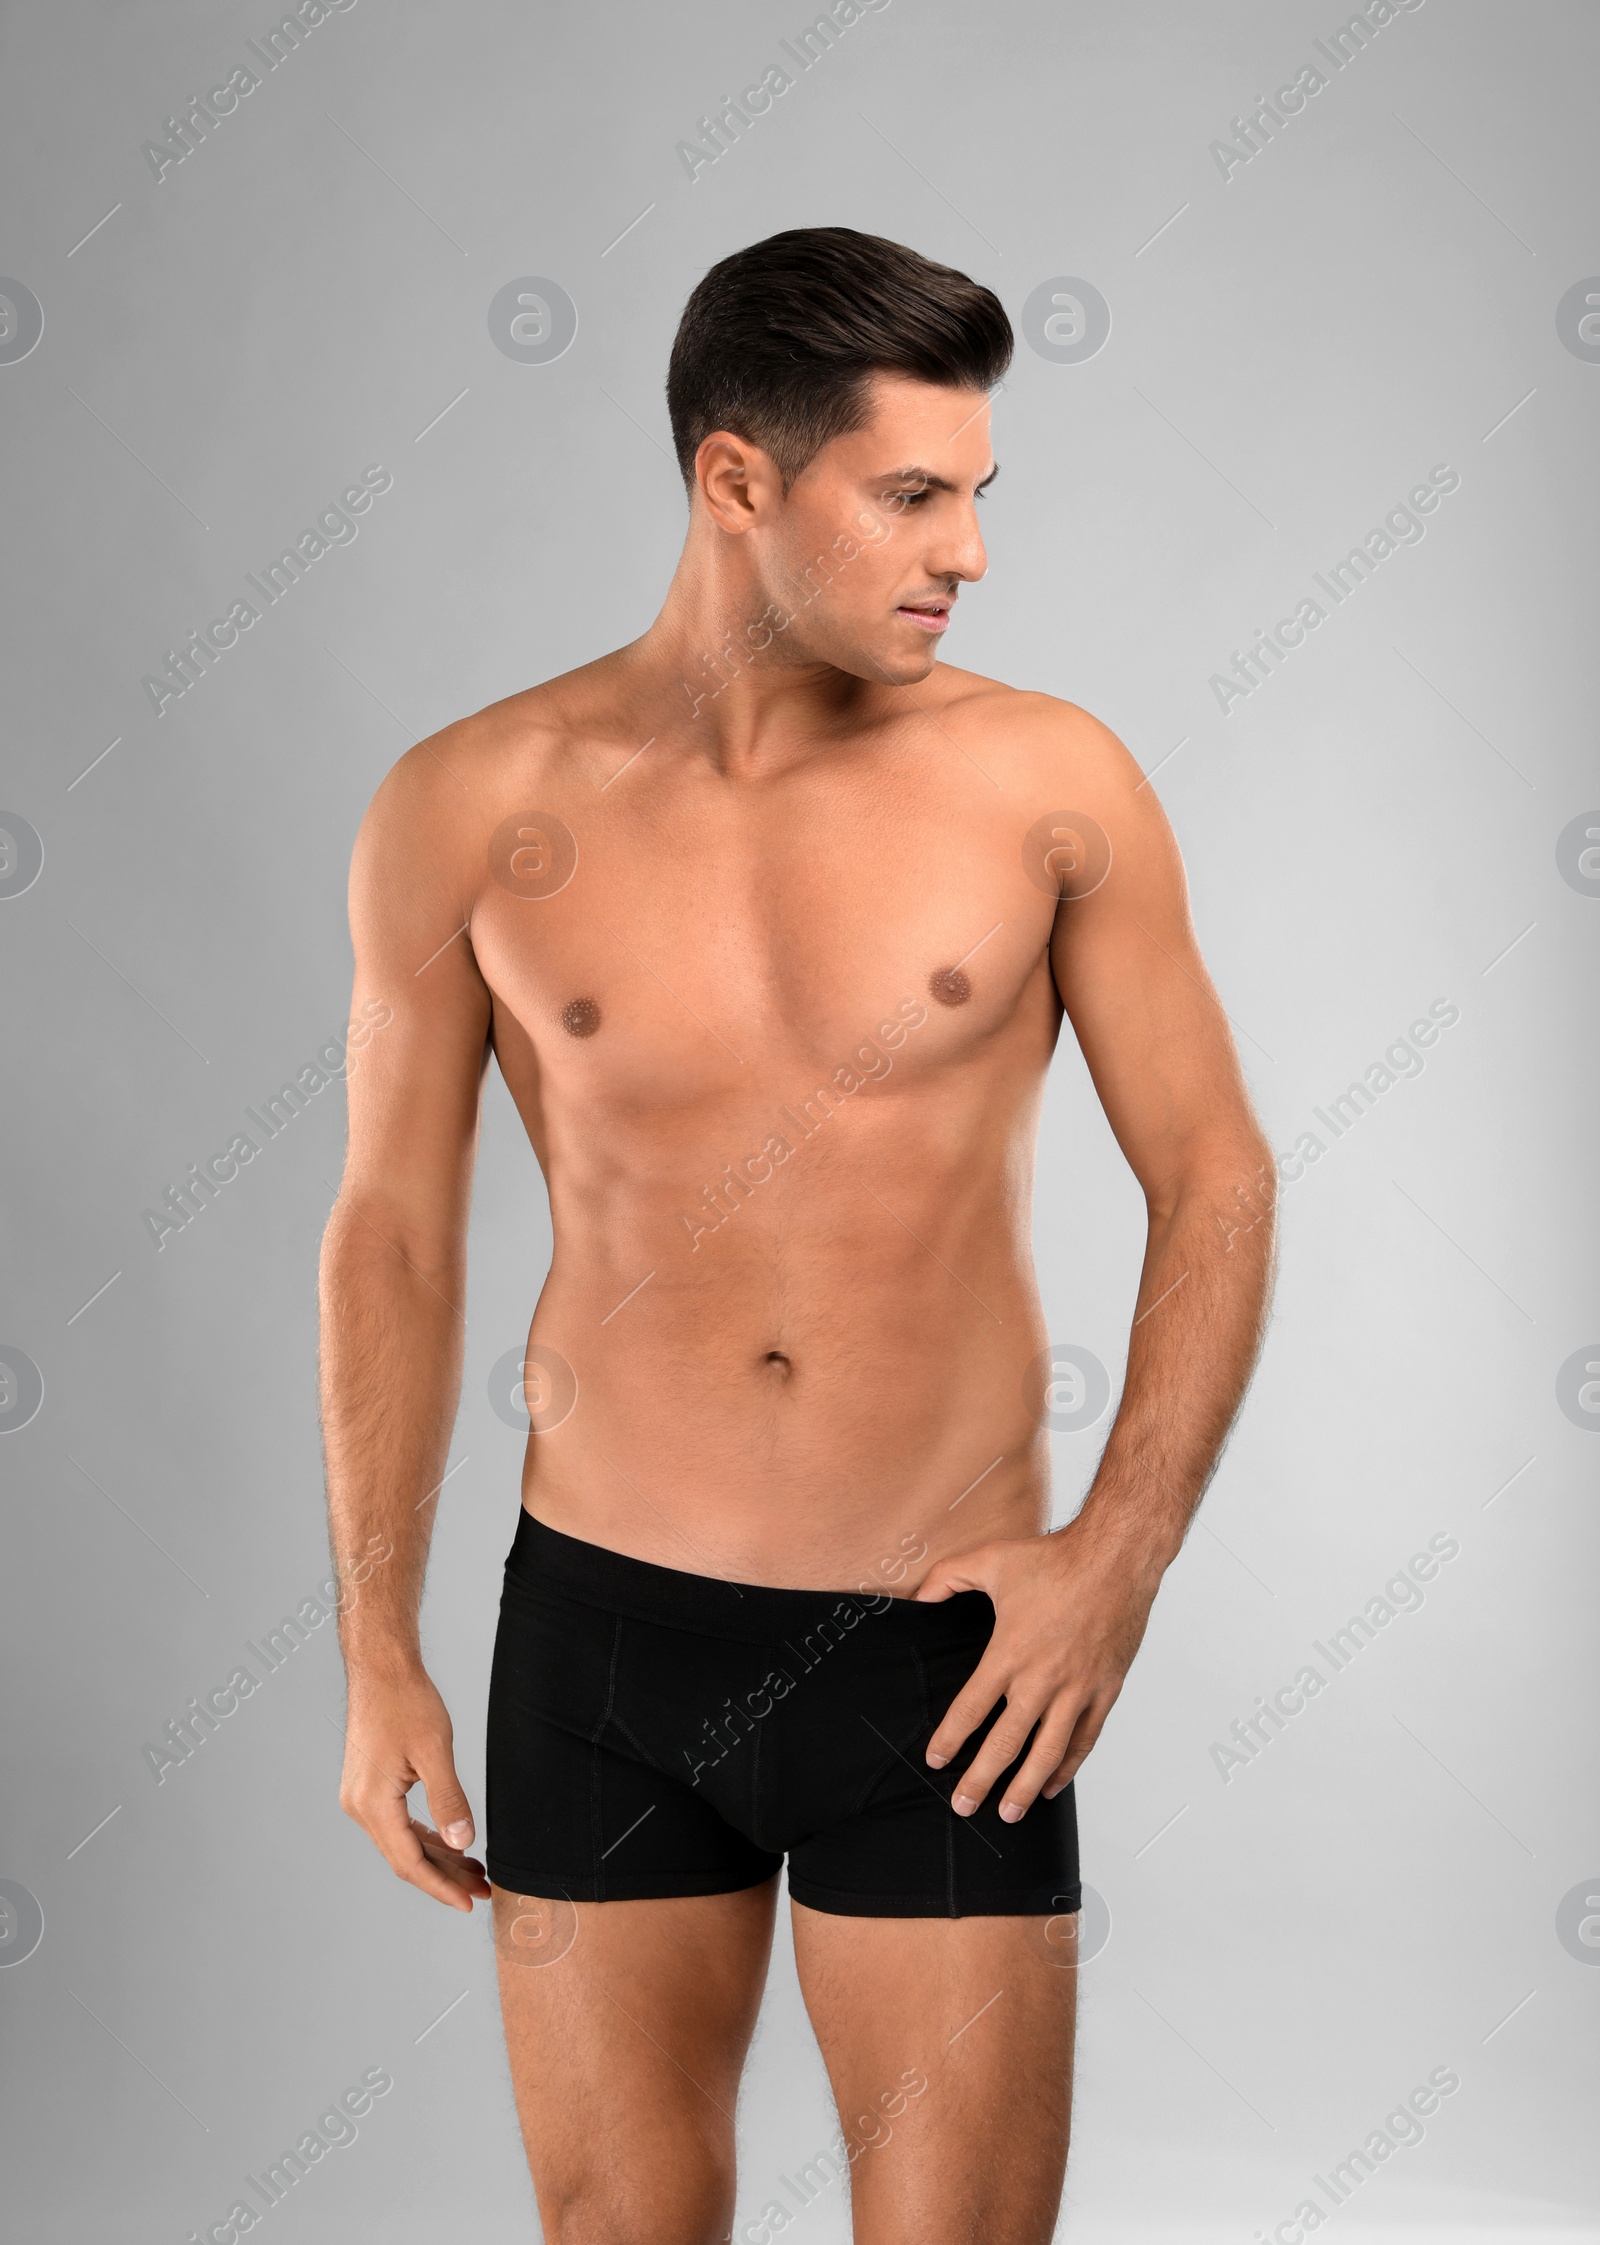 Photo of Handsome man in black underwear on light grey background